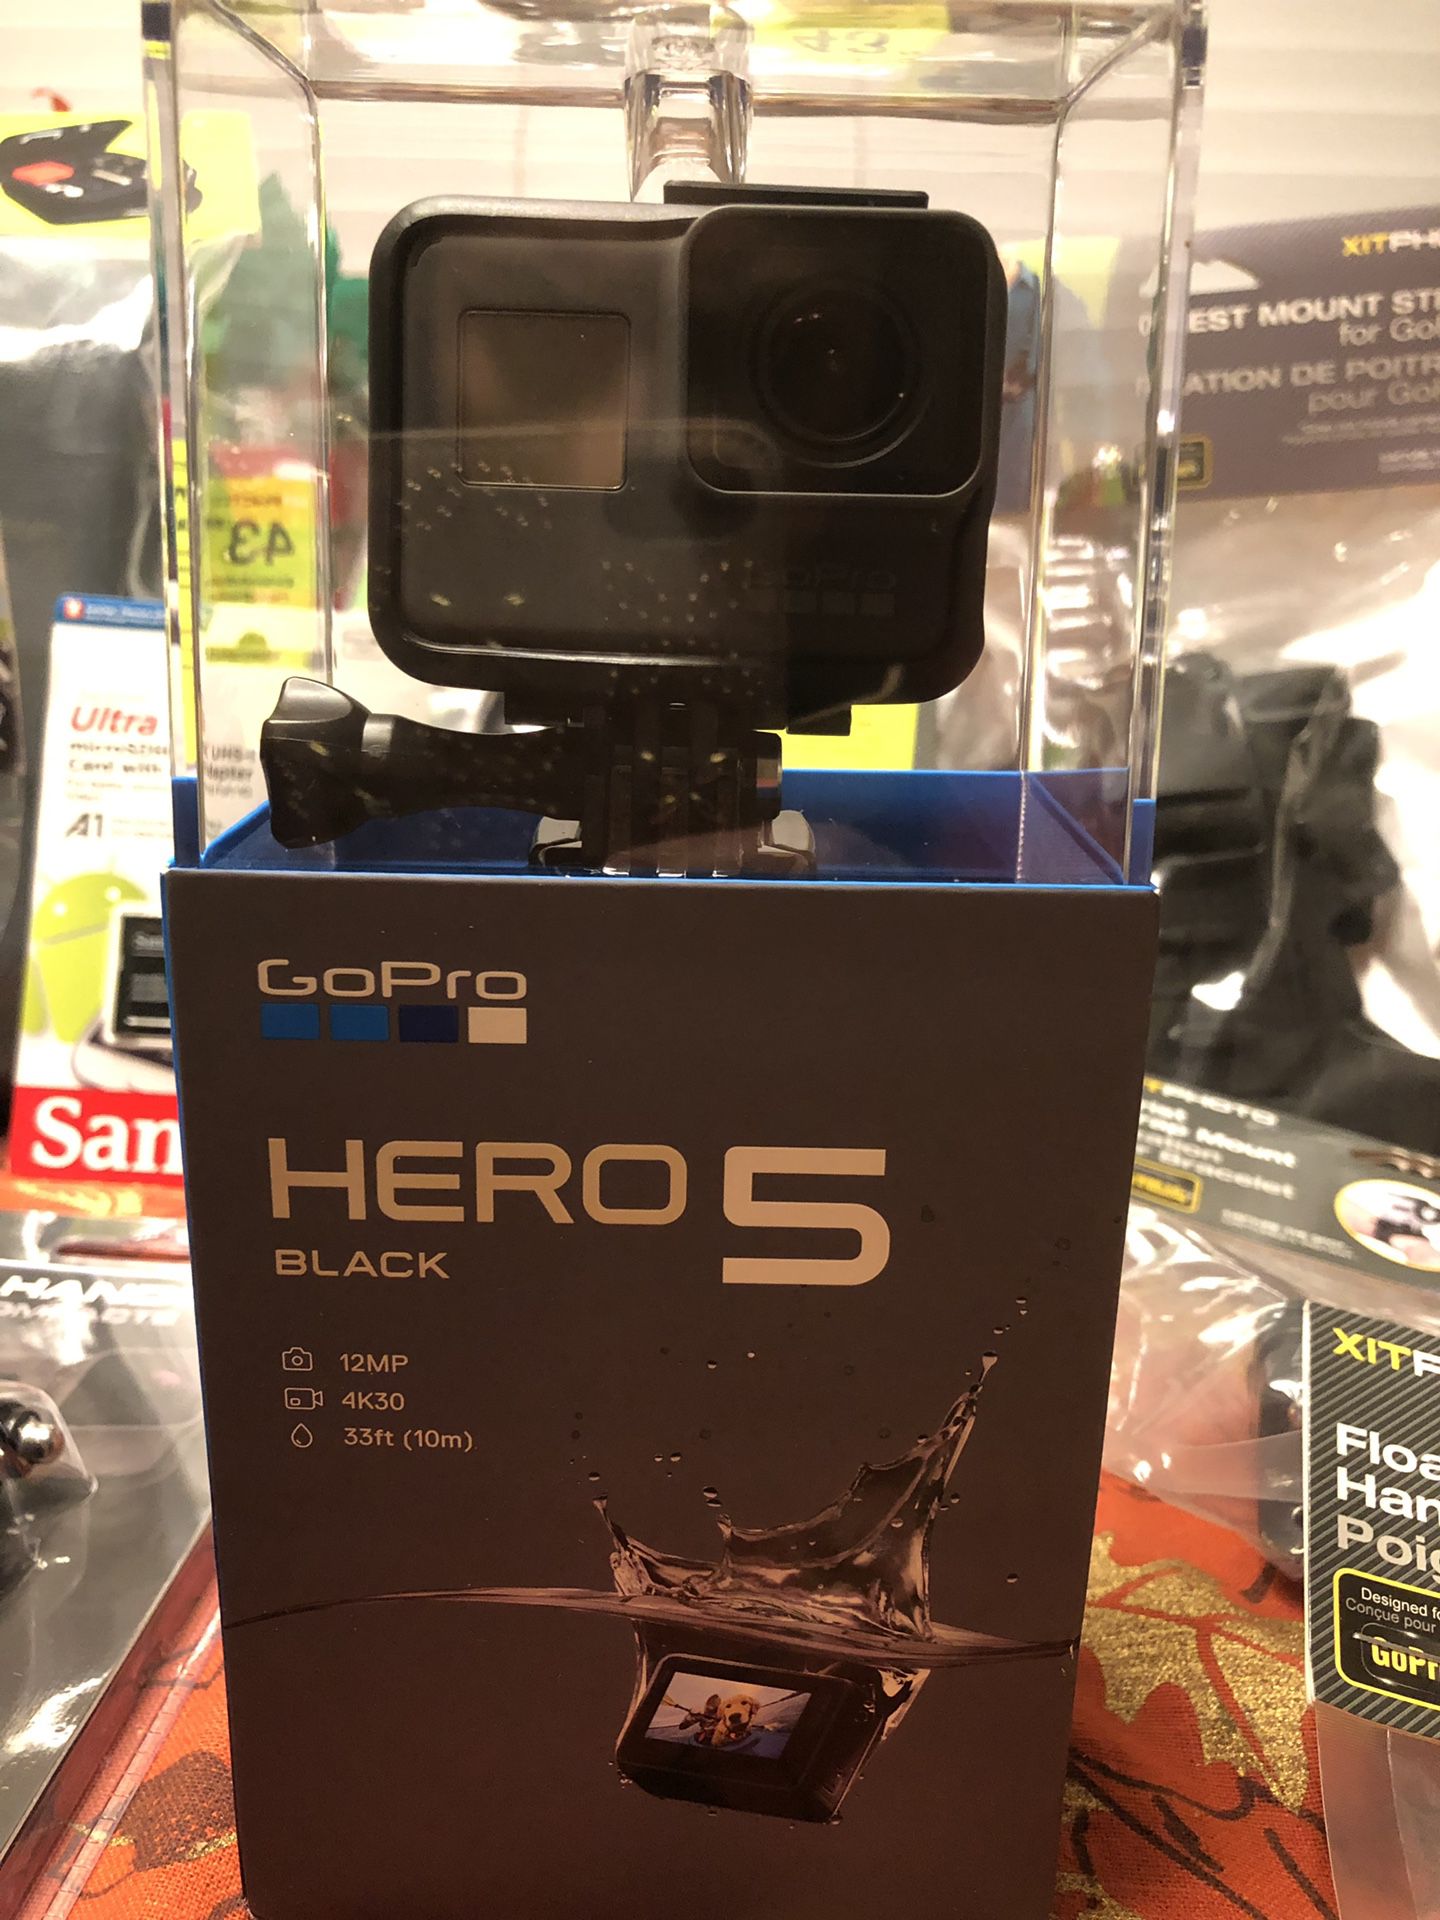 GoPro camera set